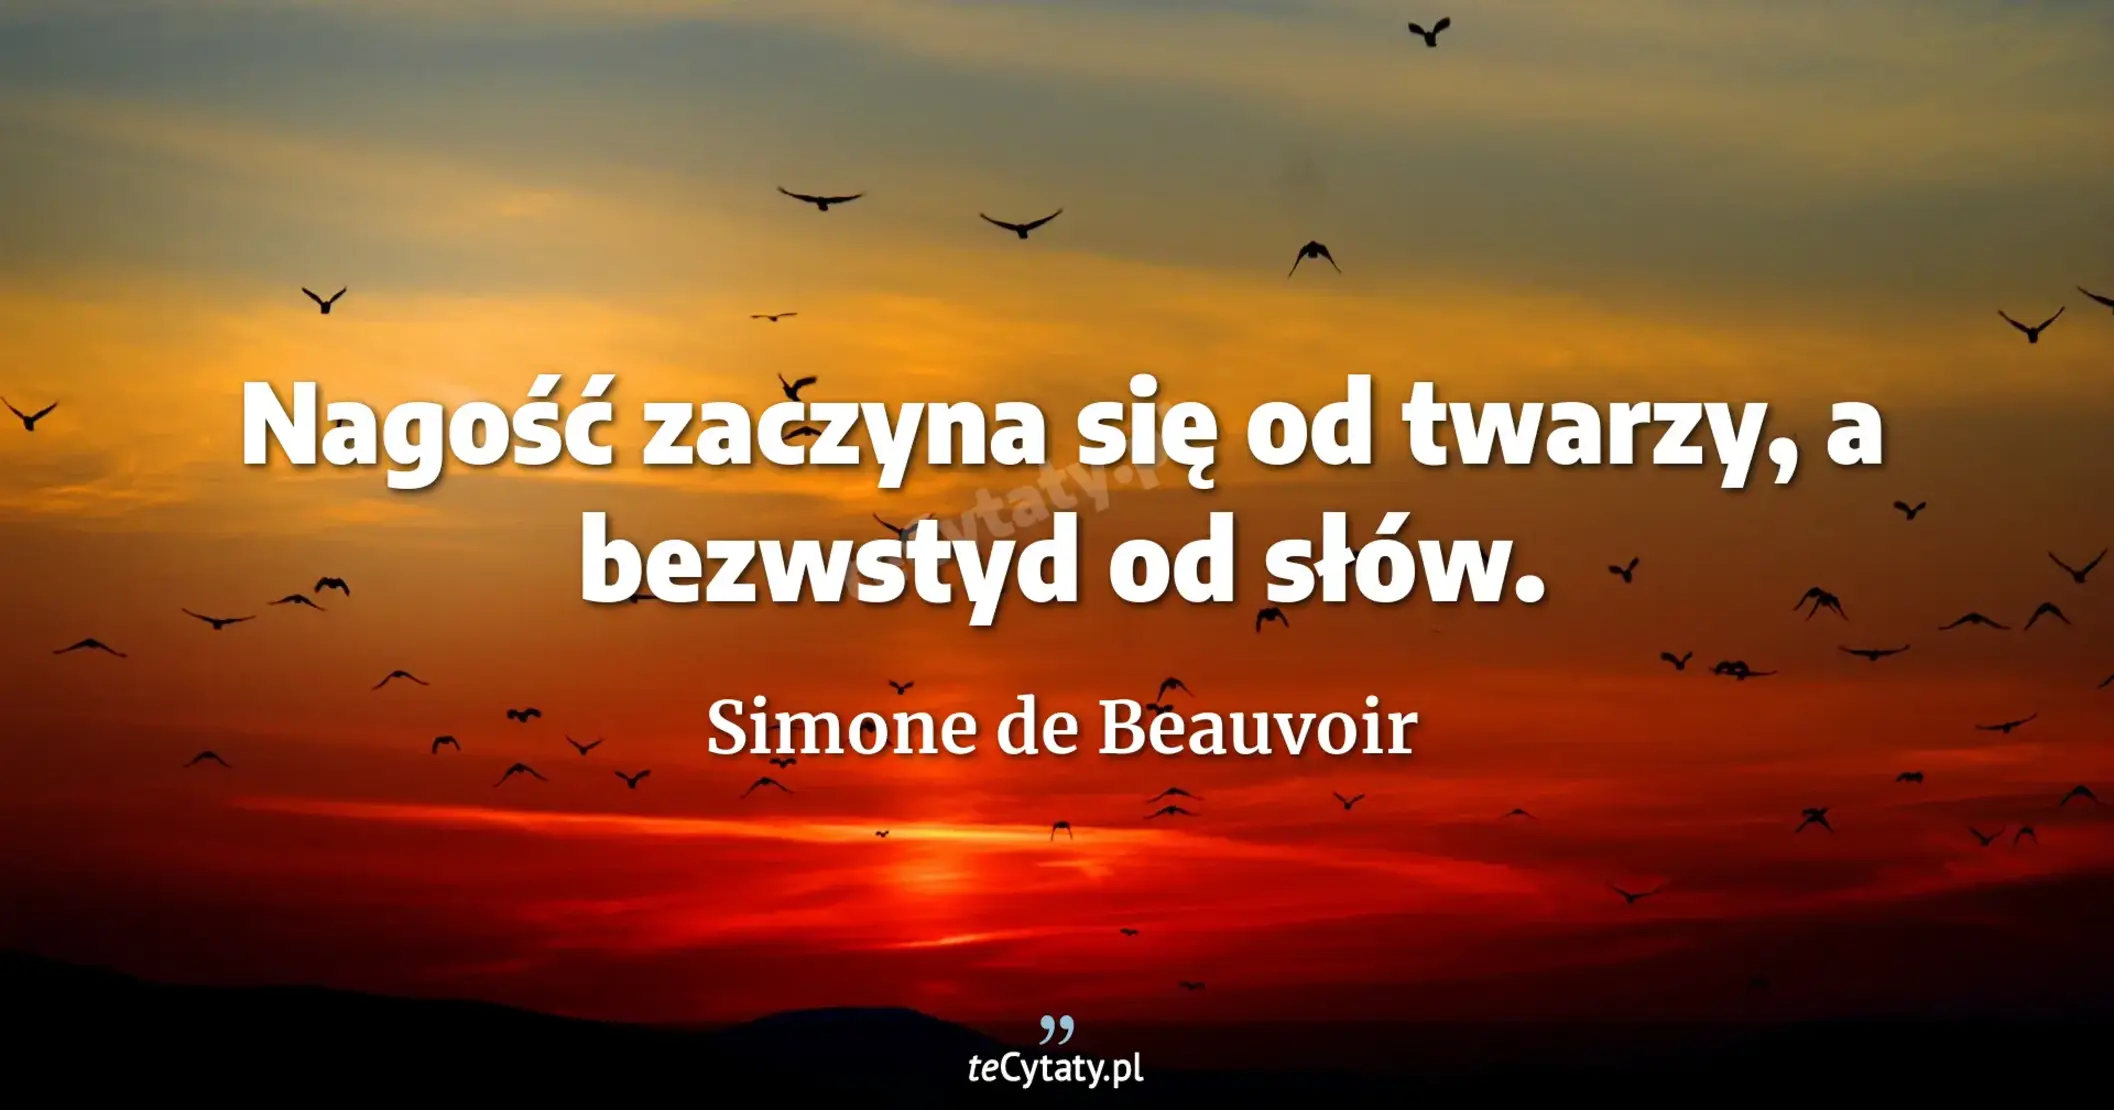 Nagość zaczyna się od twarzy, a bezwstyd od słów. - Simone de Beauvoir